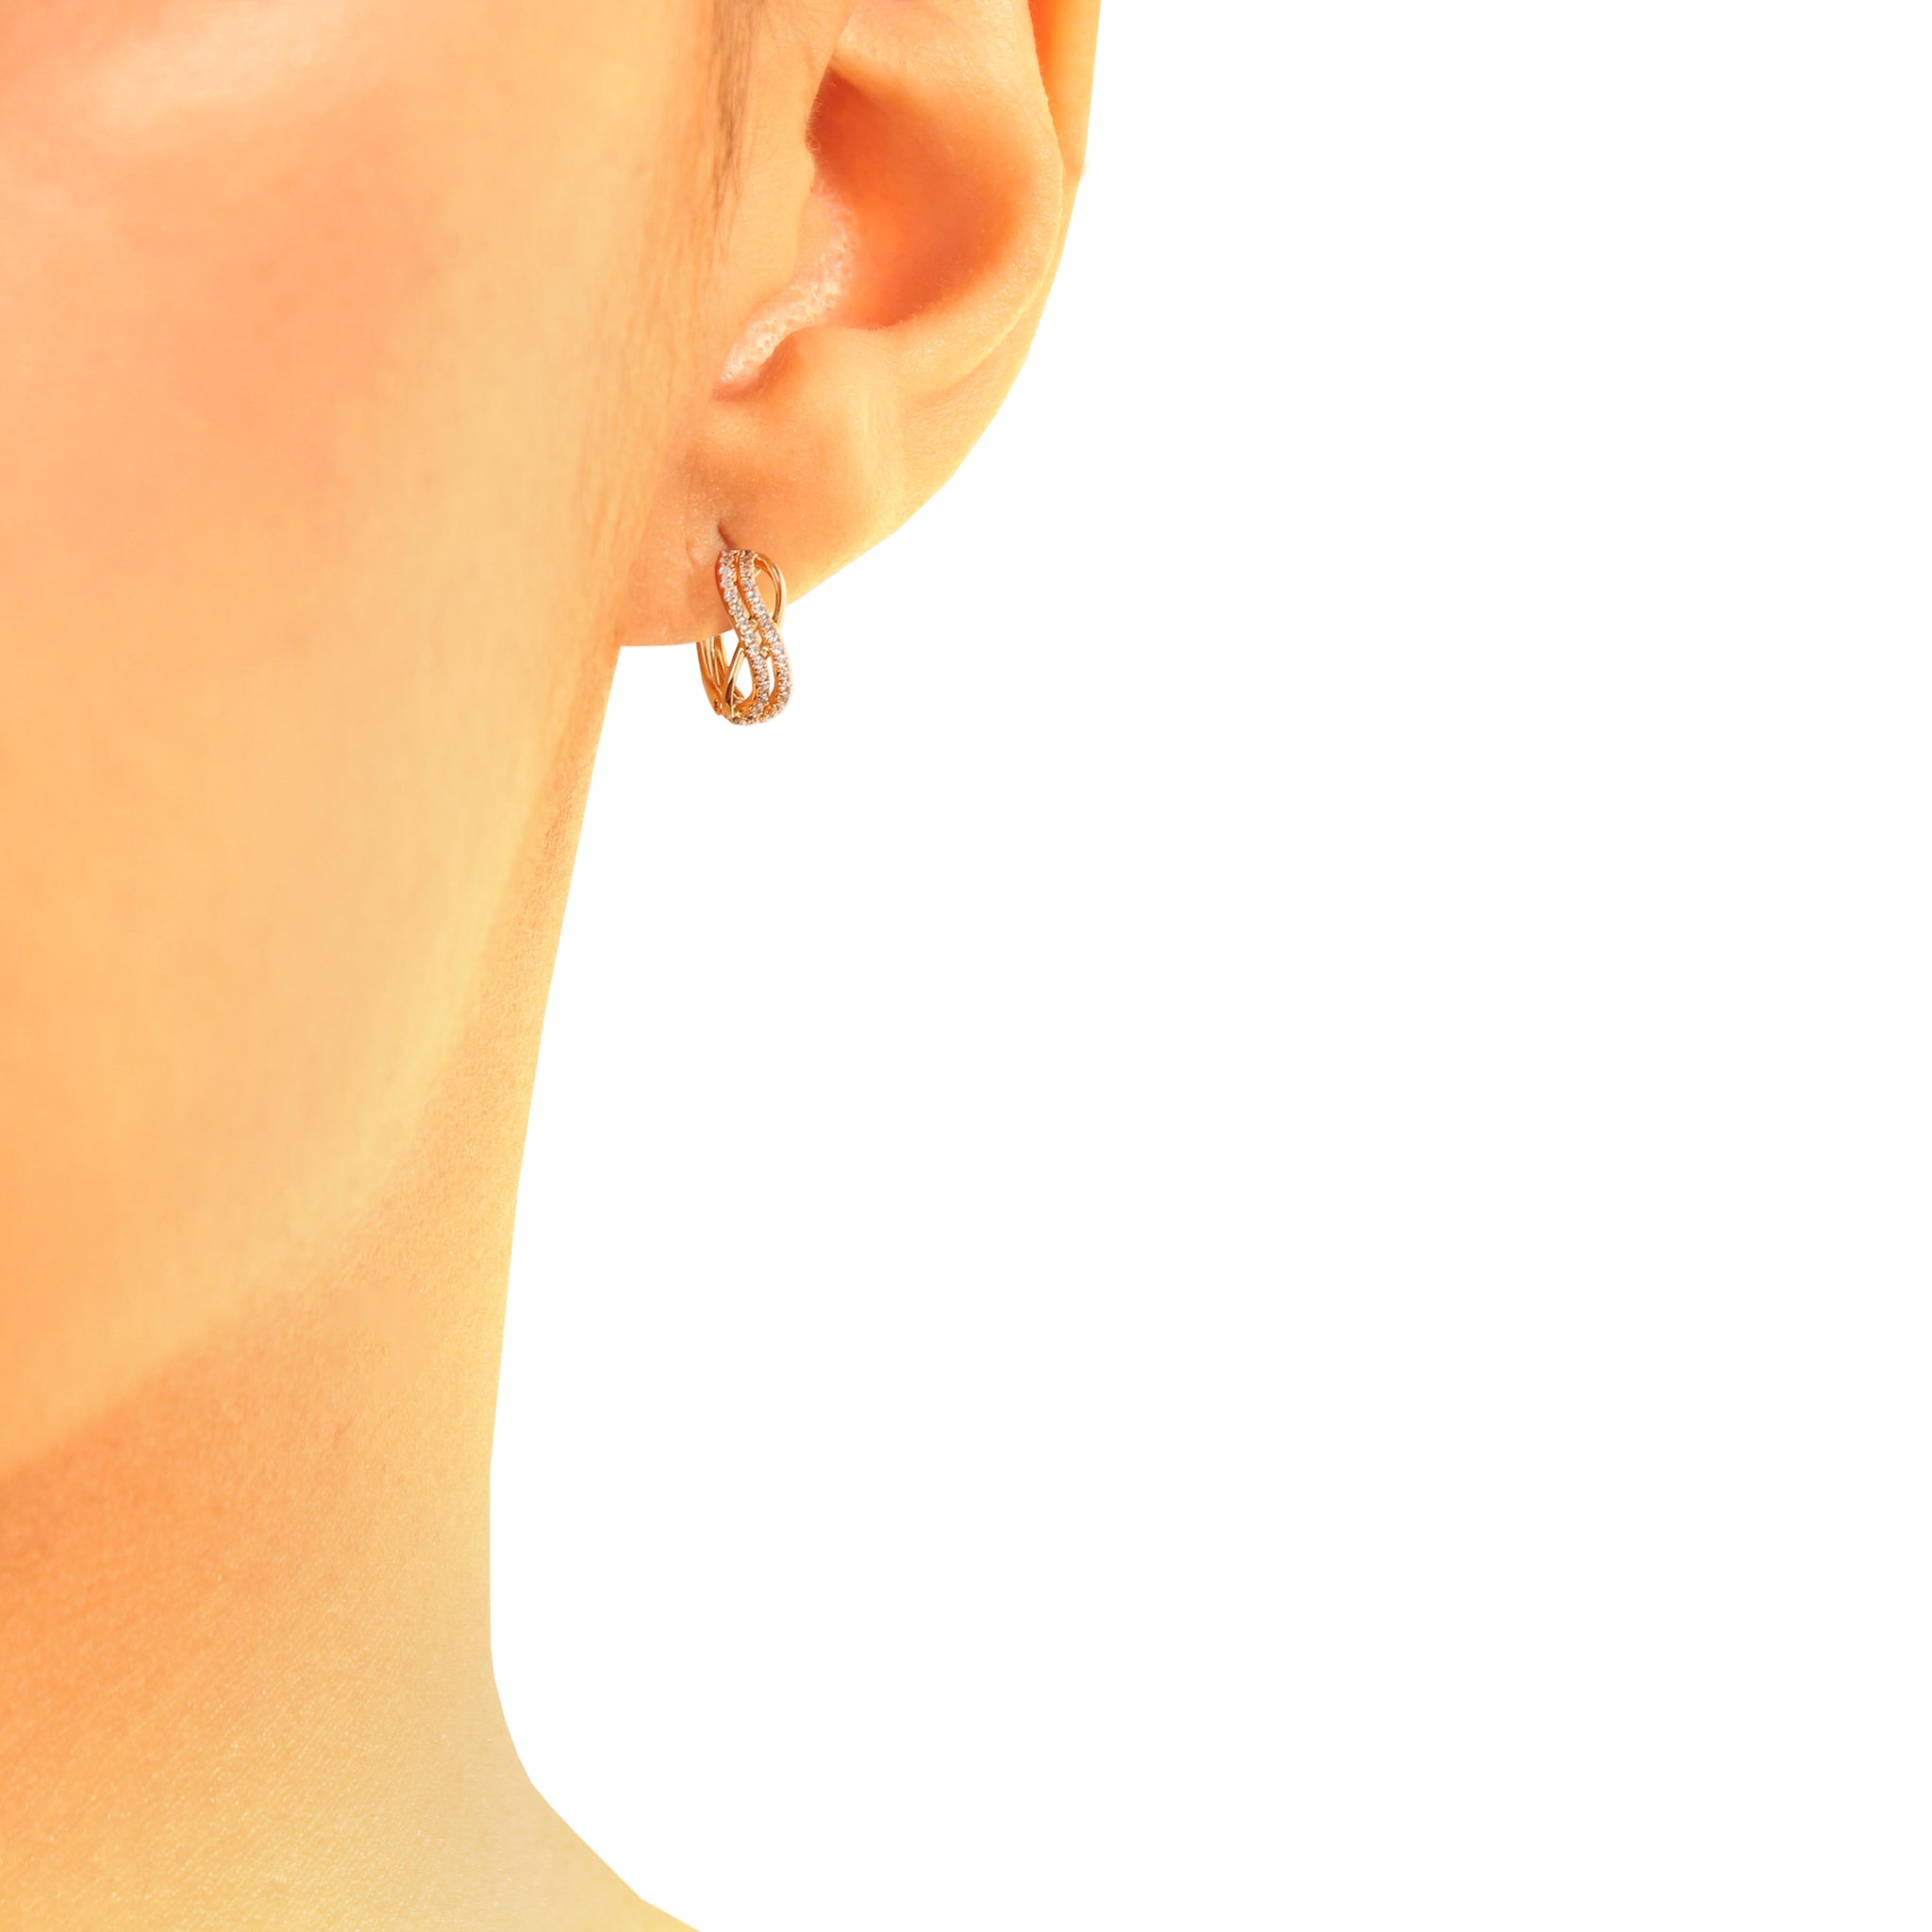 Tide earring